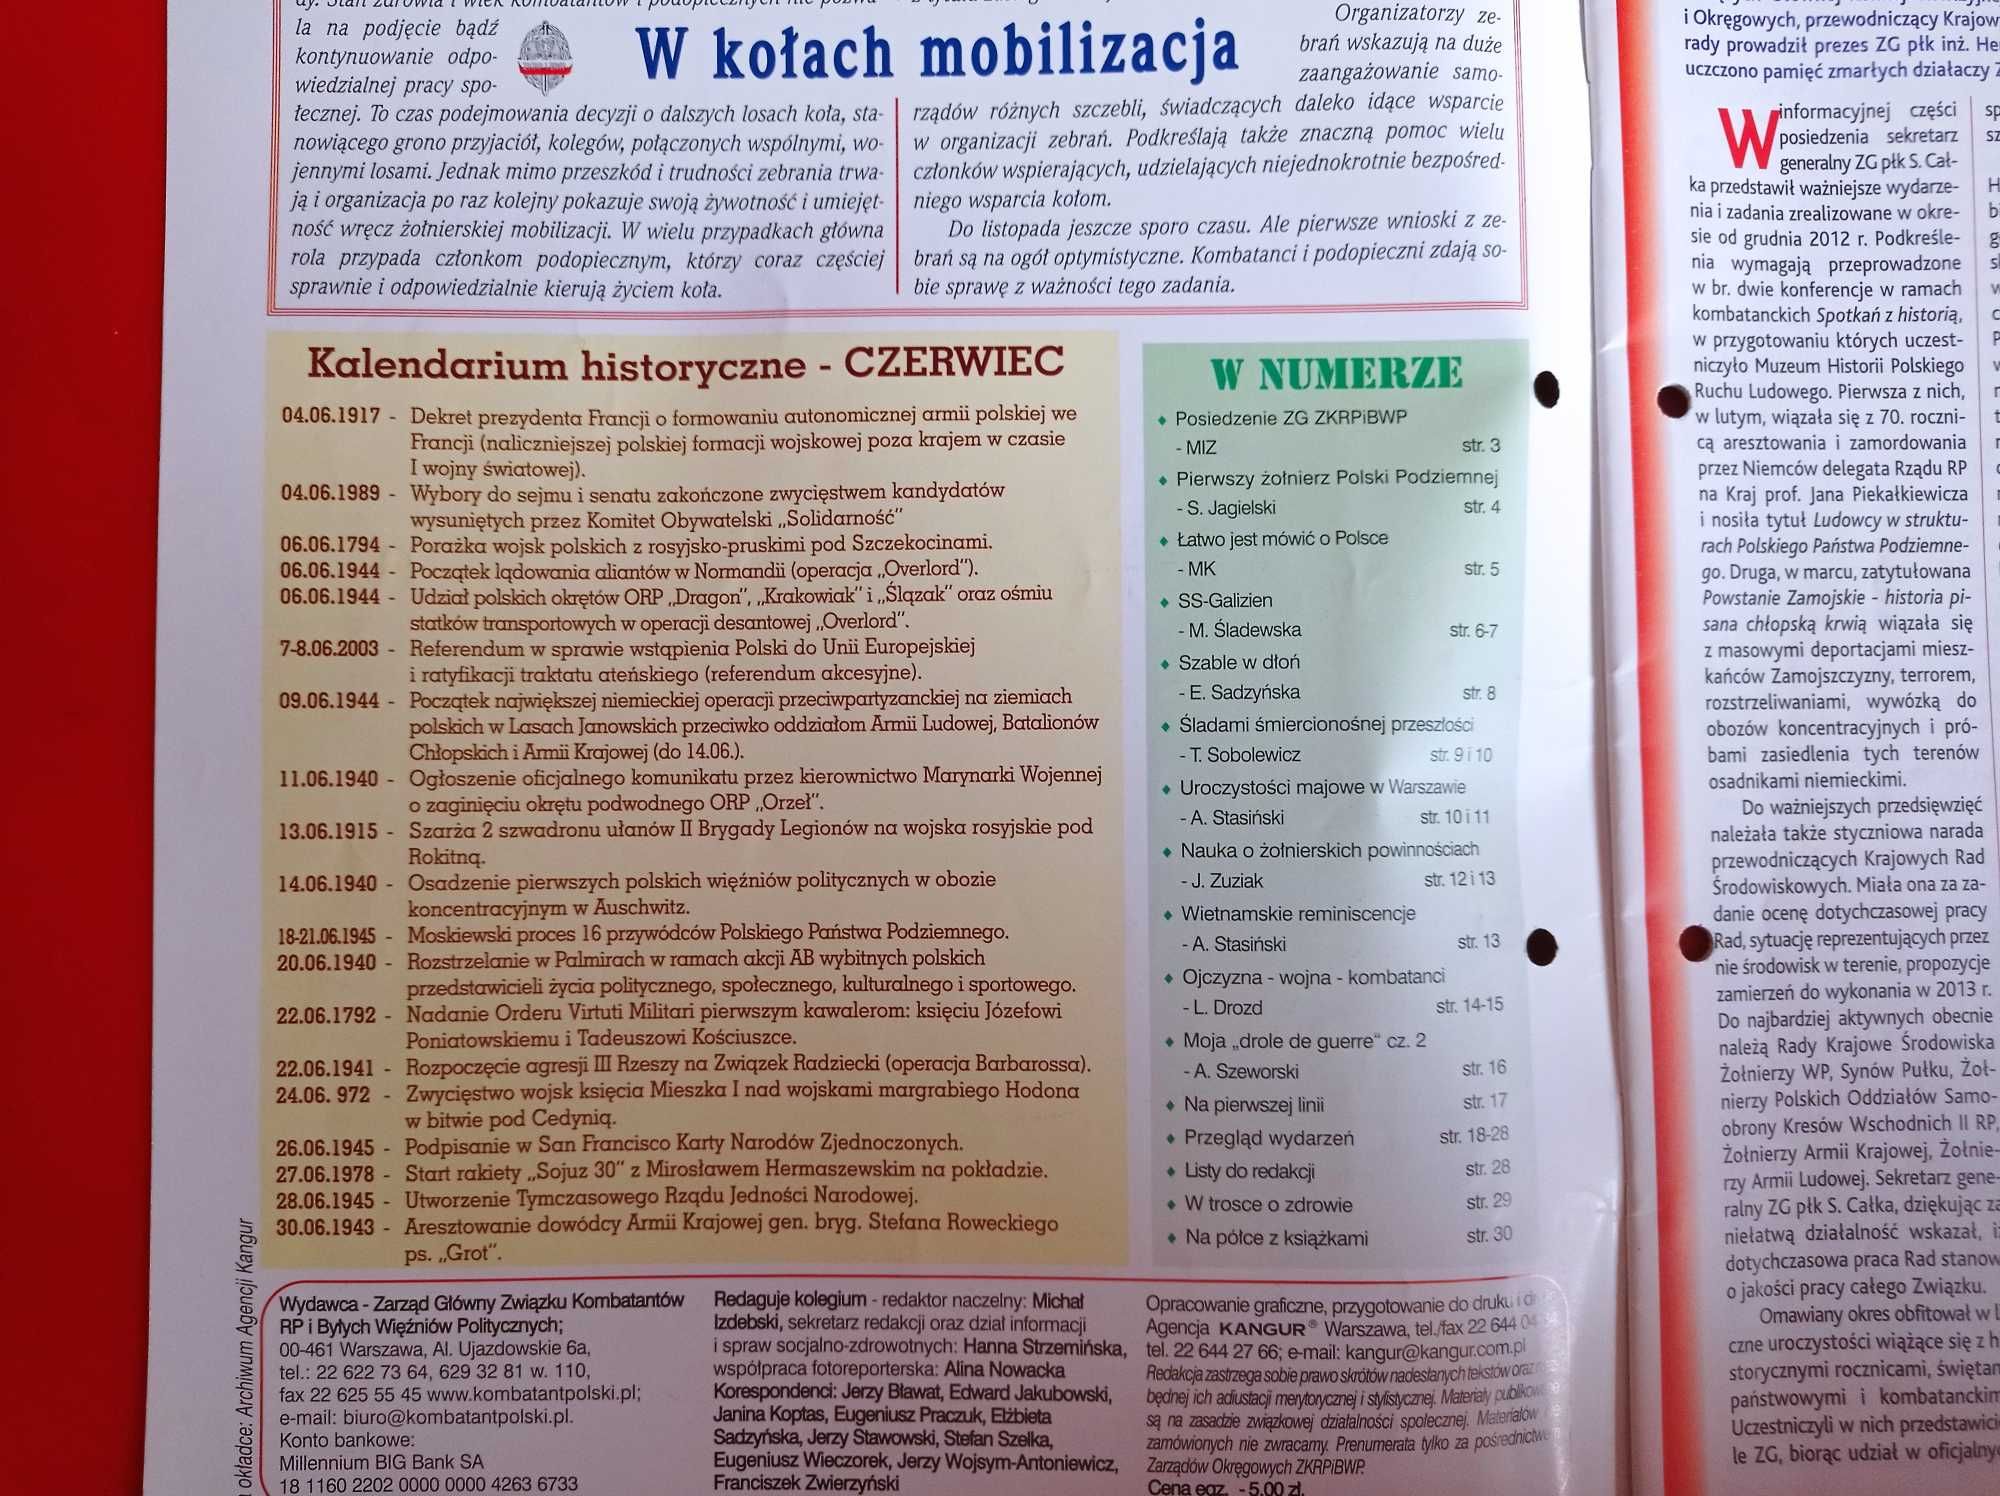 Polsce wierni nr 6/2013, czerwiec 2013